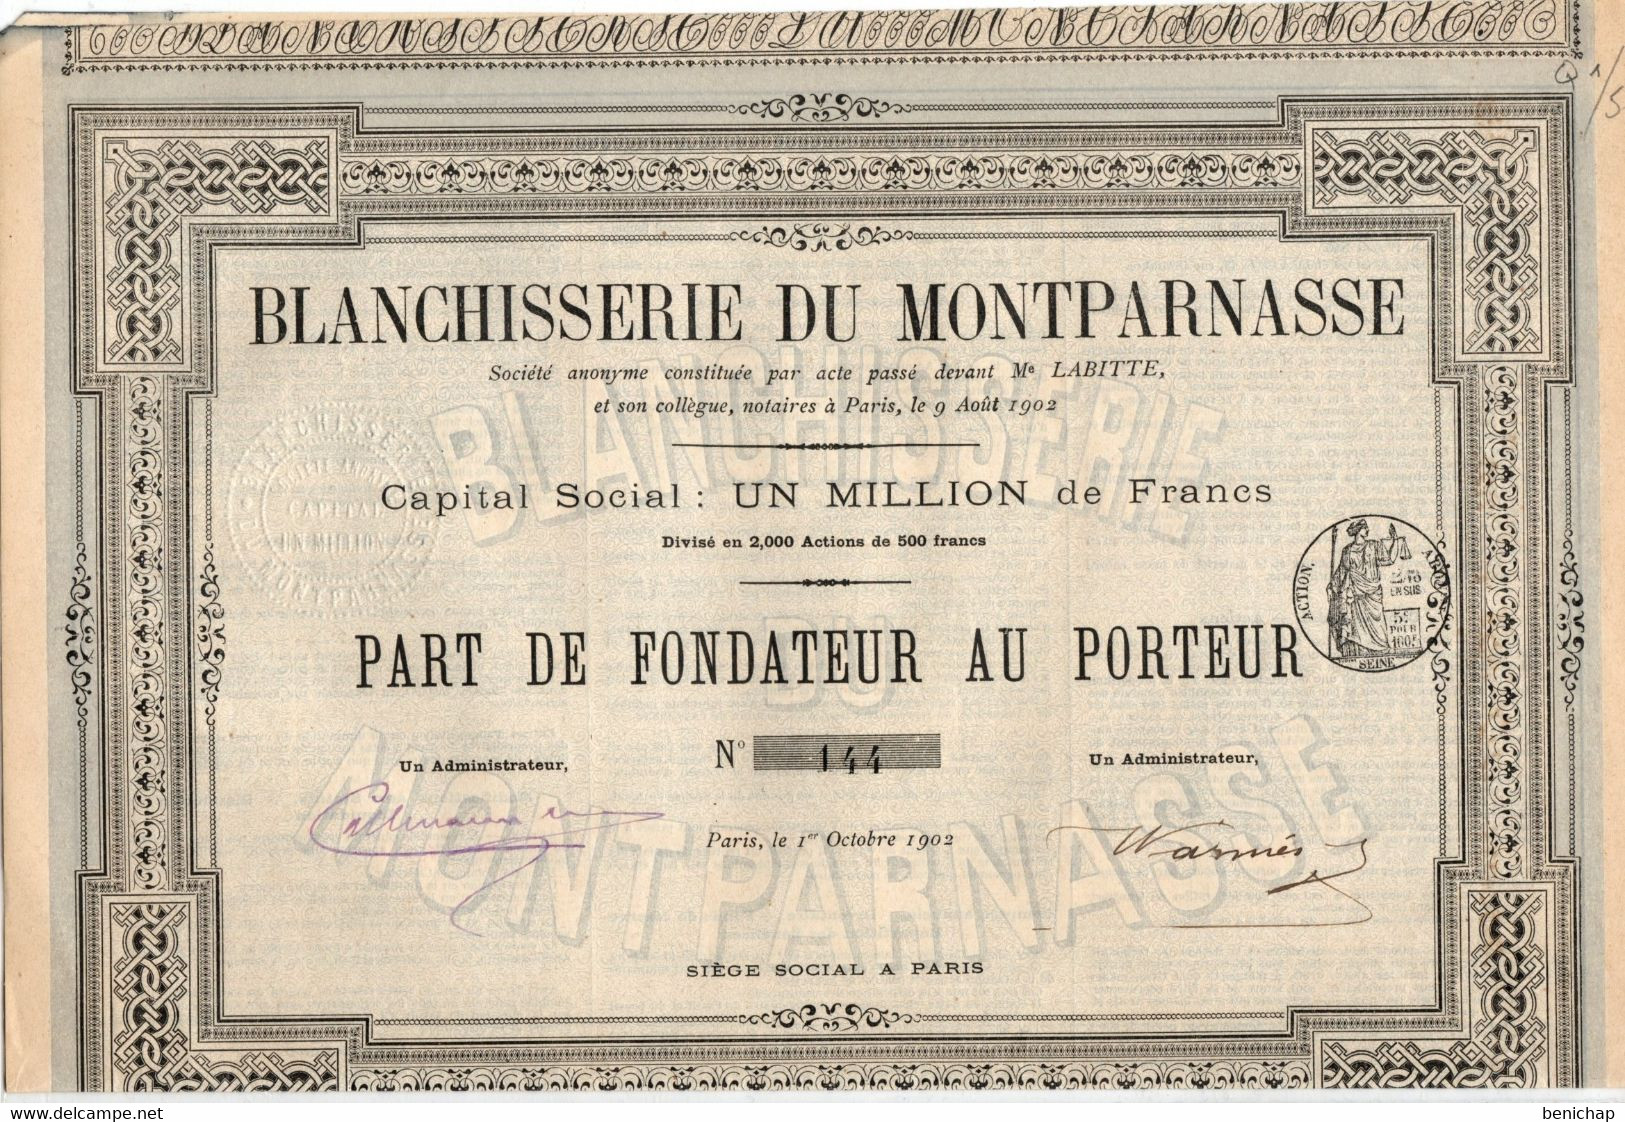 Blanchisserie Du Montparnasse S.A.- Part De Fondateur Au Porteur - Paris Octobre 1902. - Tessili